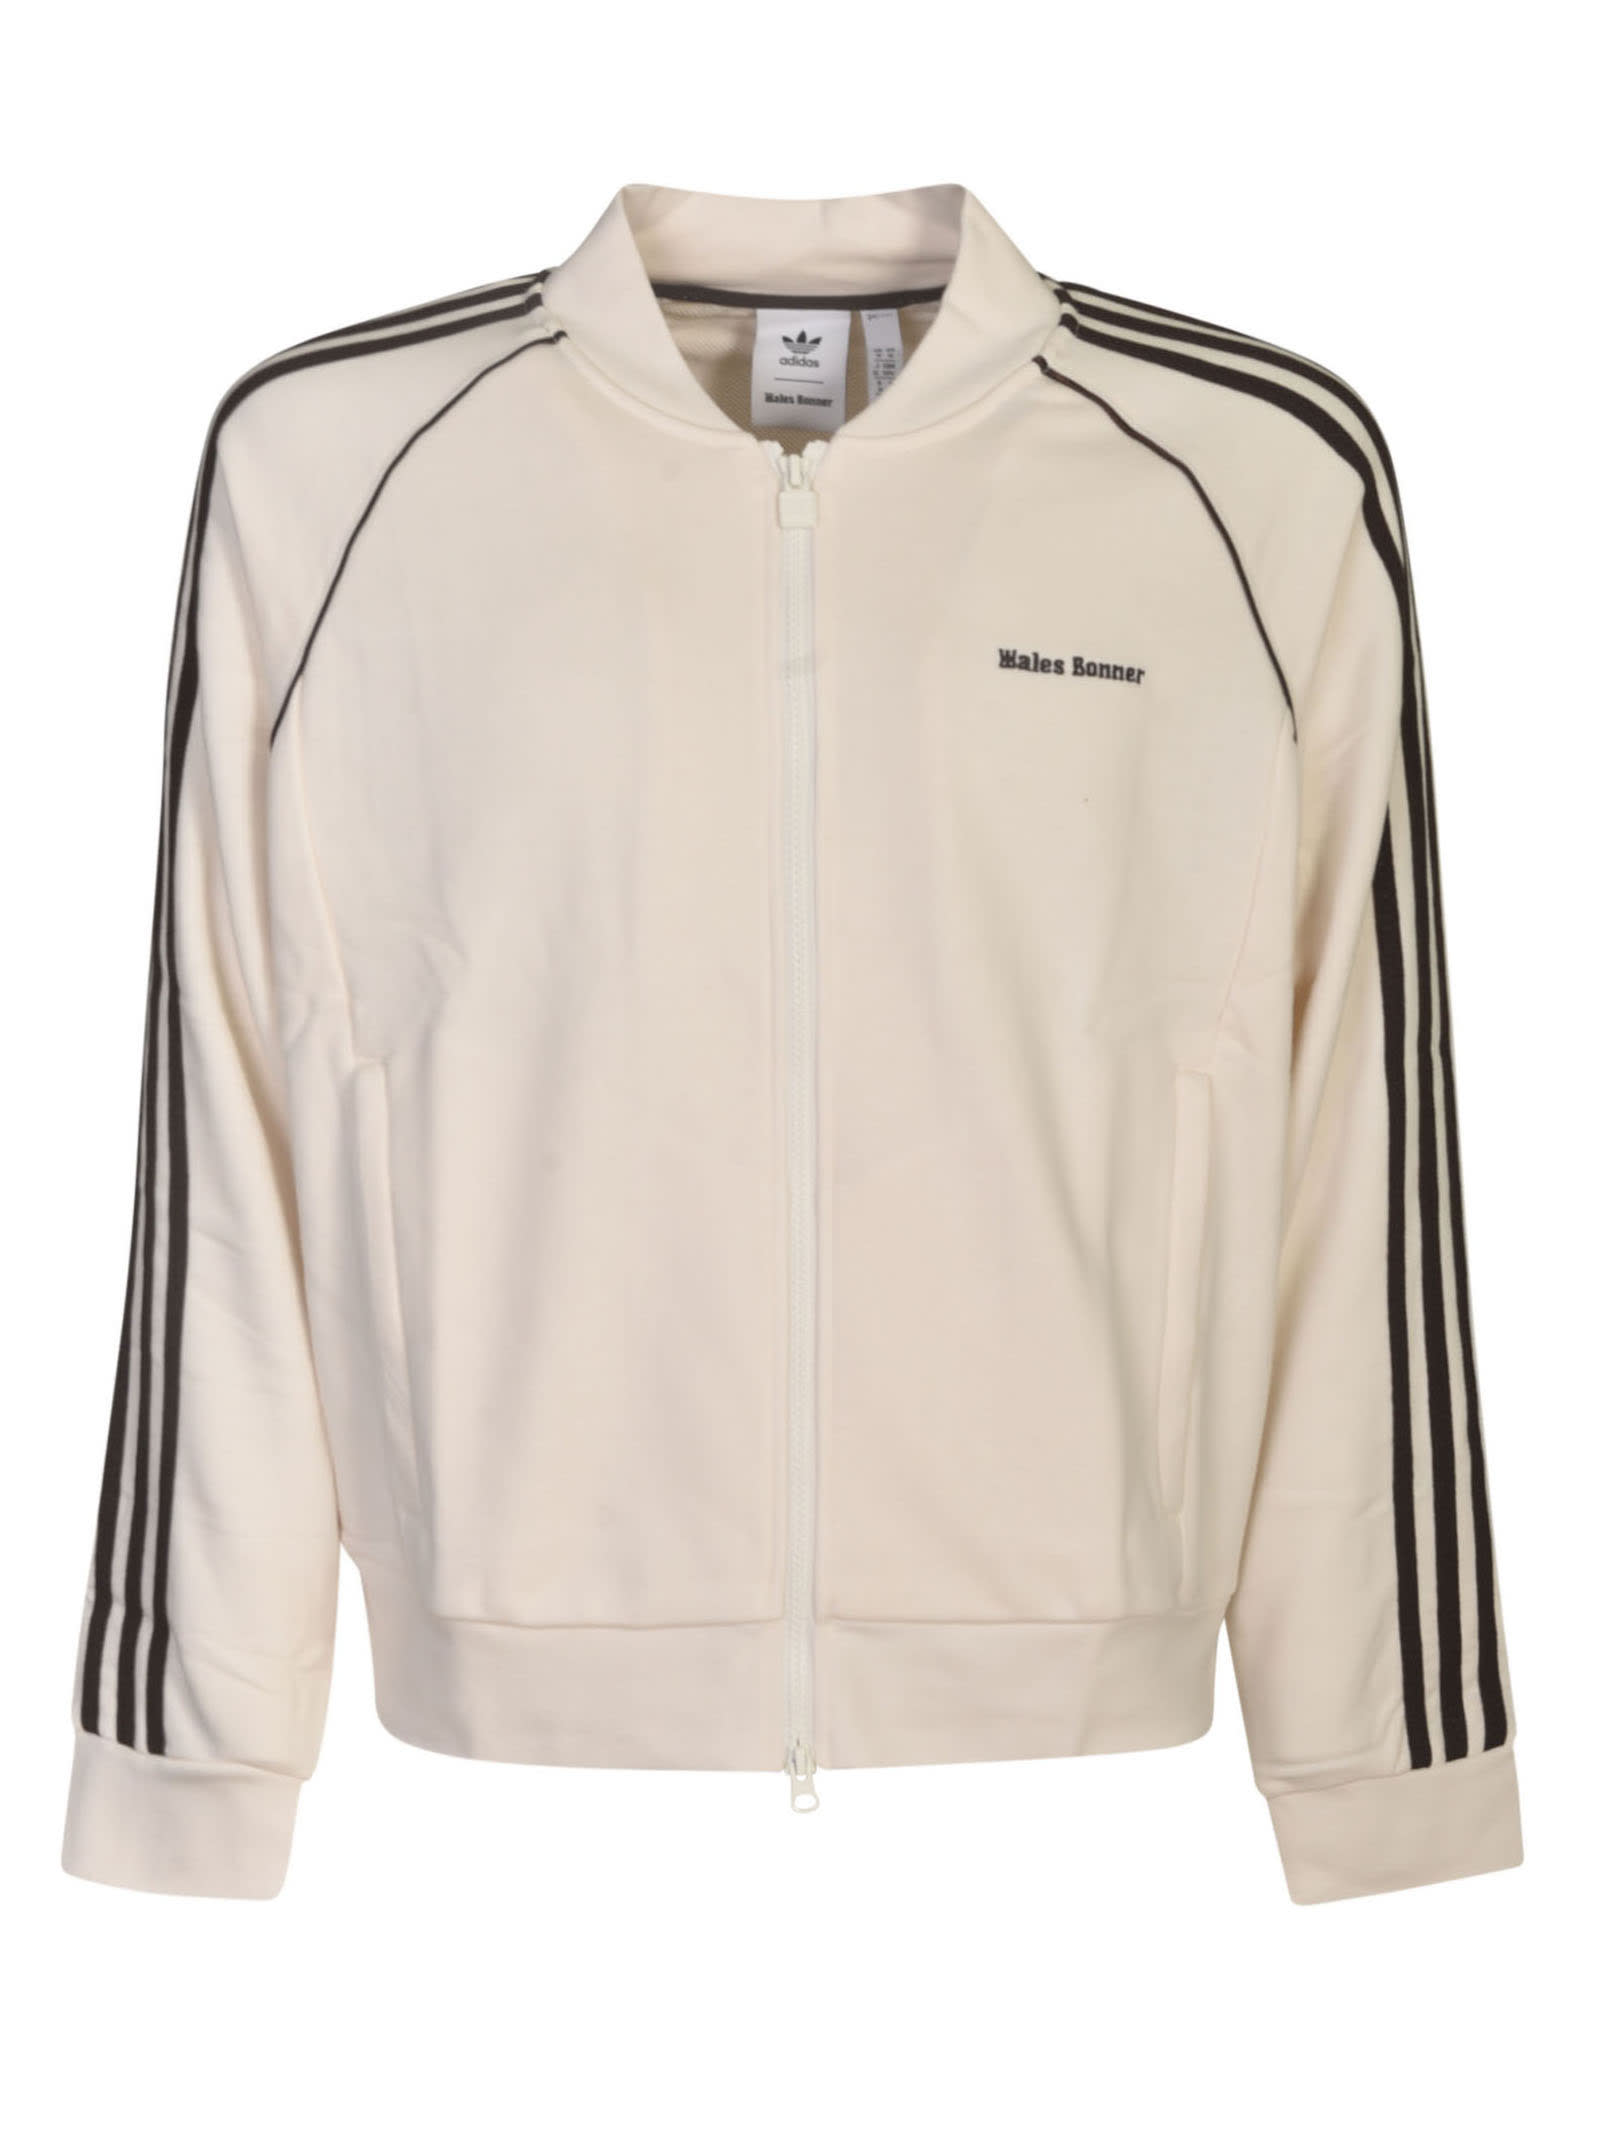 Adidas Originals by Wales Bonner Stripe Jacket - White - unisex - Size: Extra Large